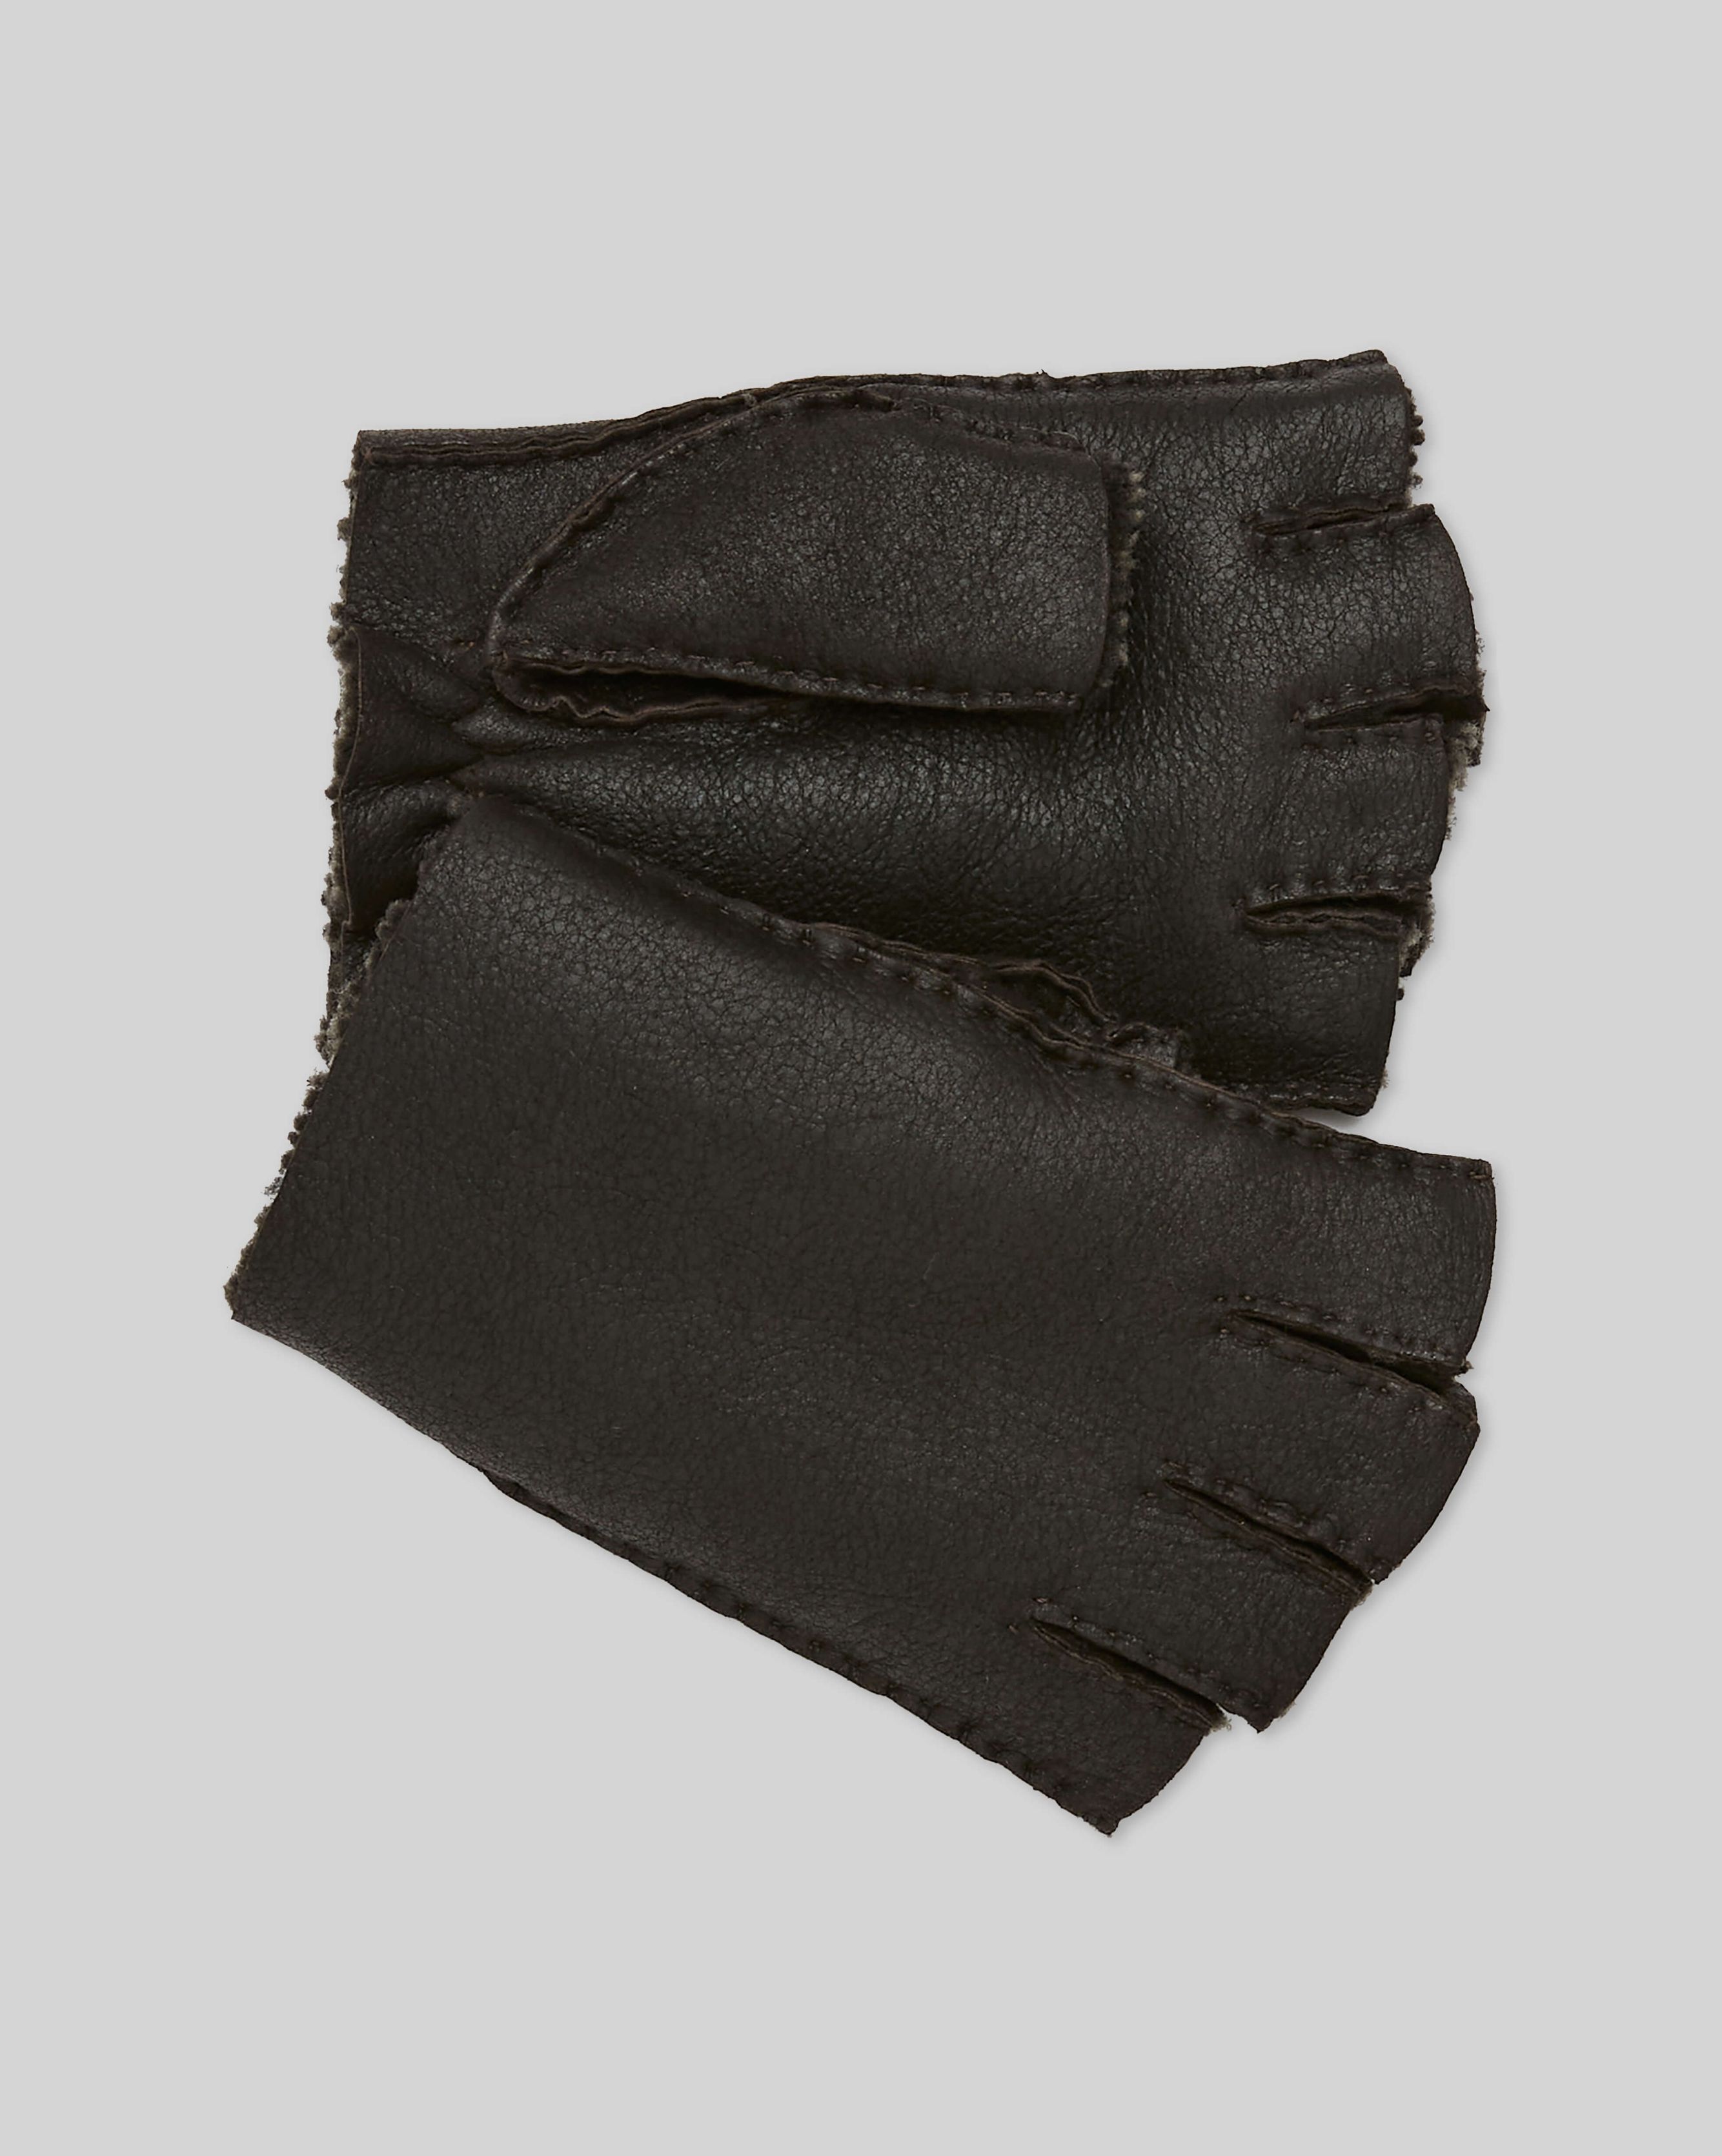 Men's Fingerless Gloves